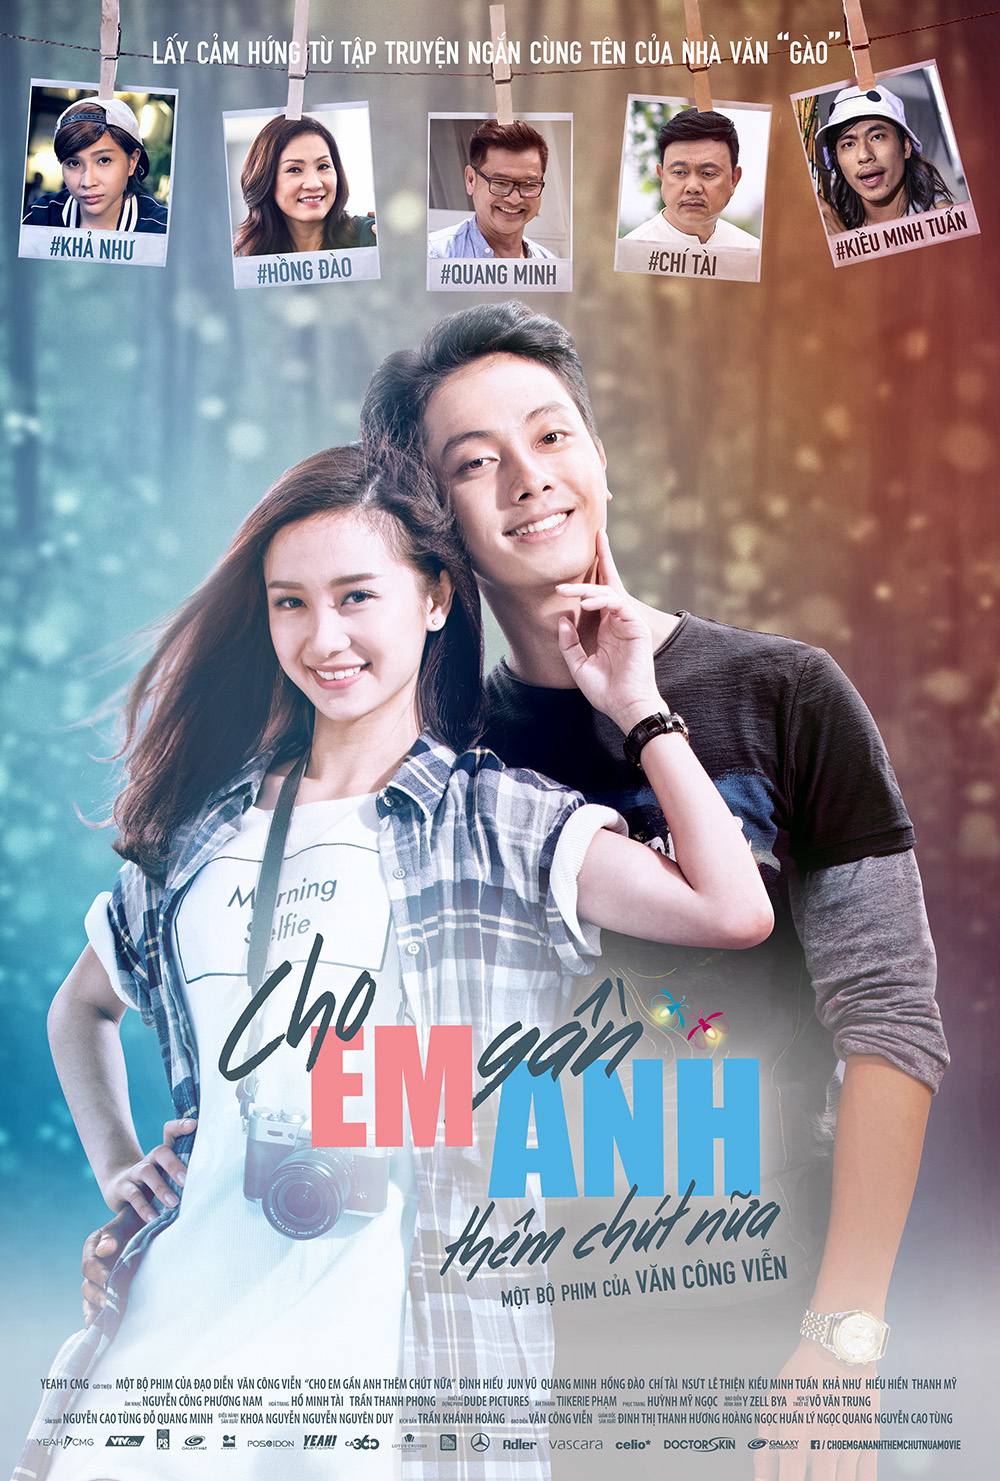 Poster Phim Cho EM gần ANH thêm chút nữa (Diary of Fireflies)